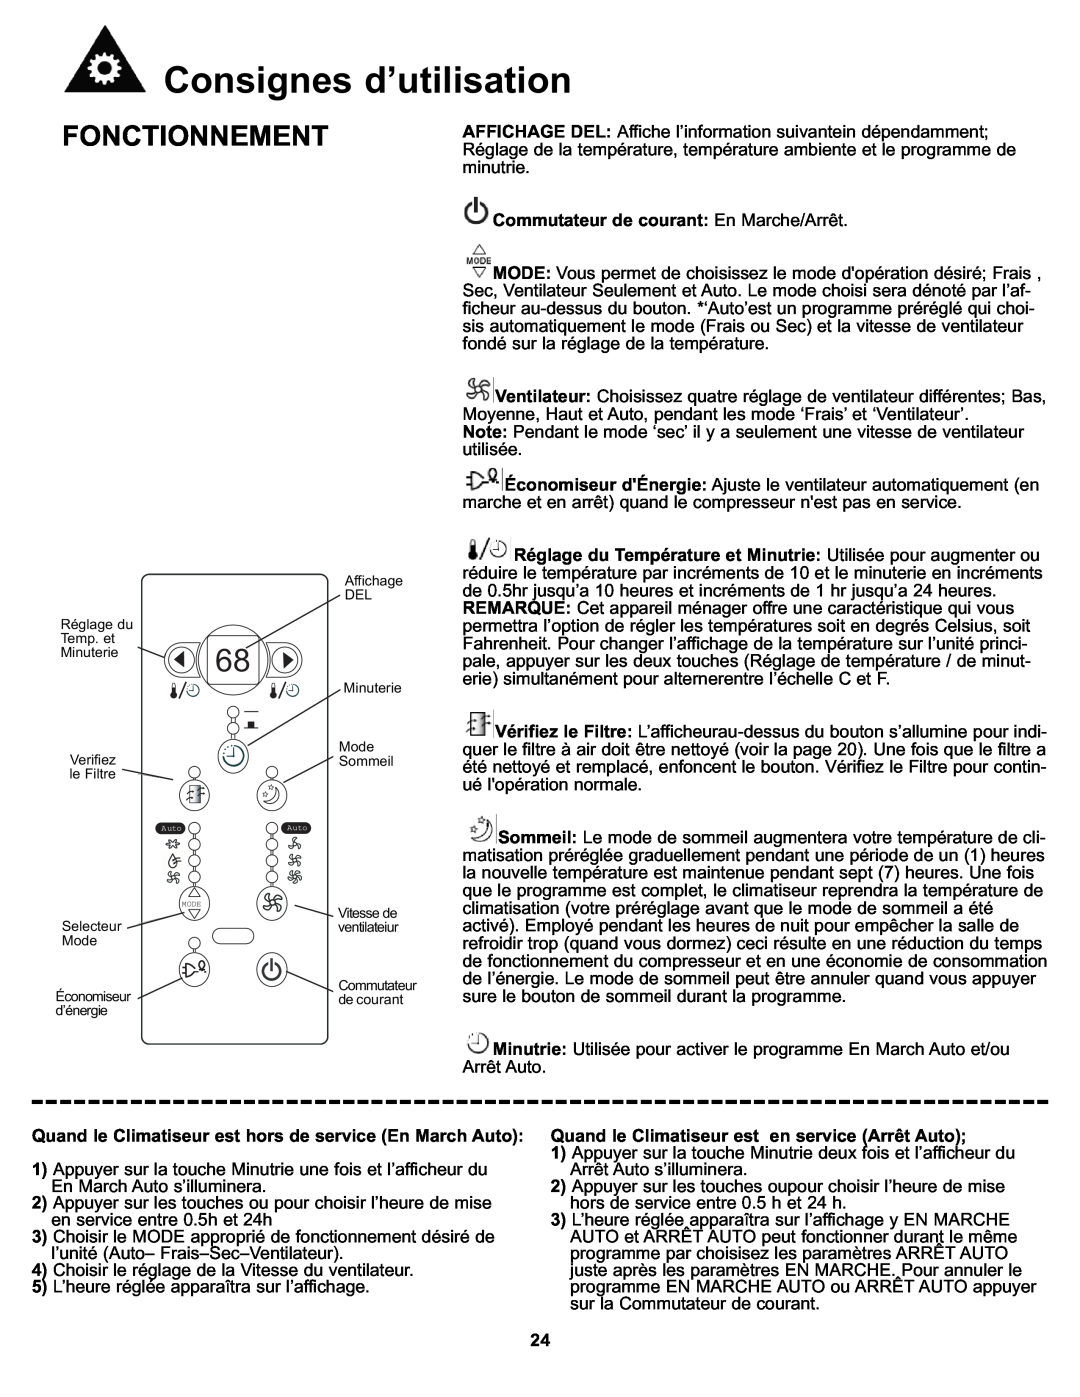 Danby DAC8011E, DAC8010E manual Consignes d’utilisation, Fonctionnement, Commutateur de courant En Marche/Arrêt 